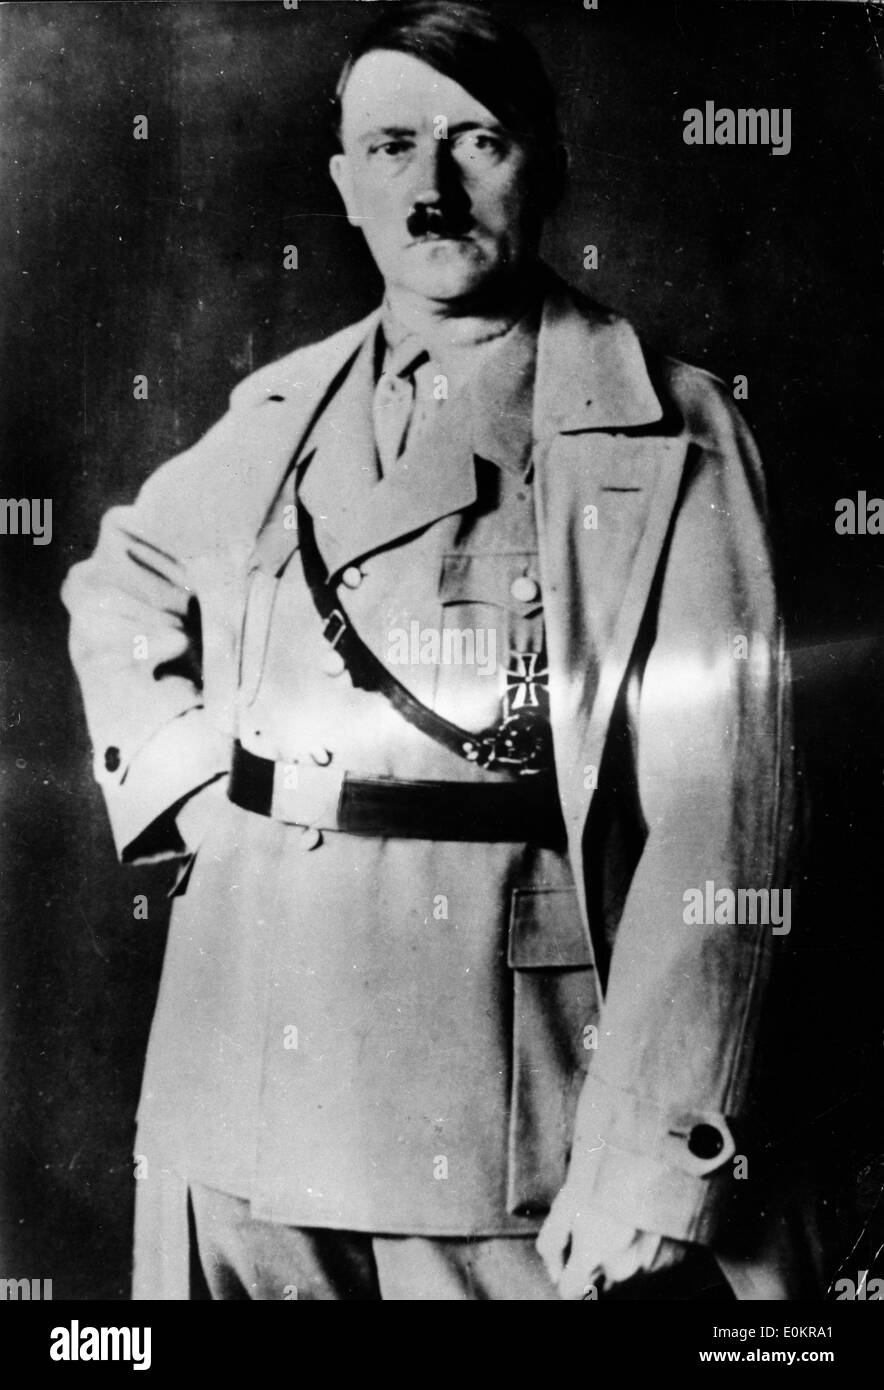 Porträt von Adolf Hitler Stockfoto